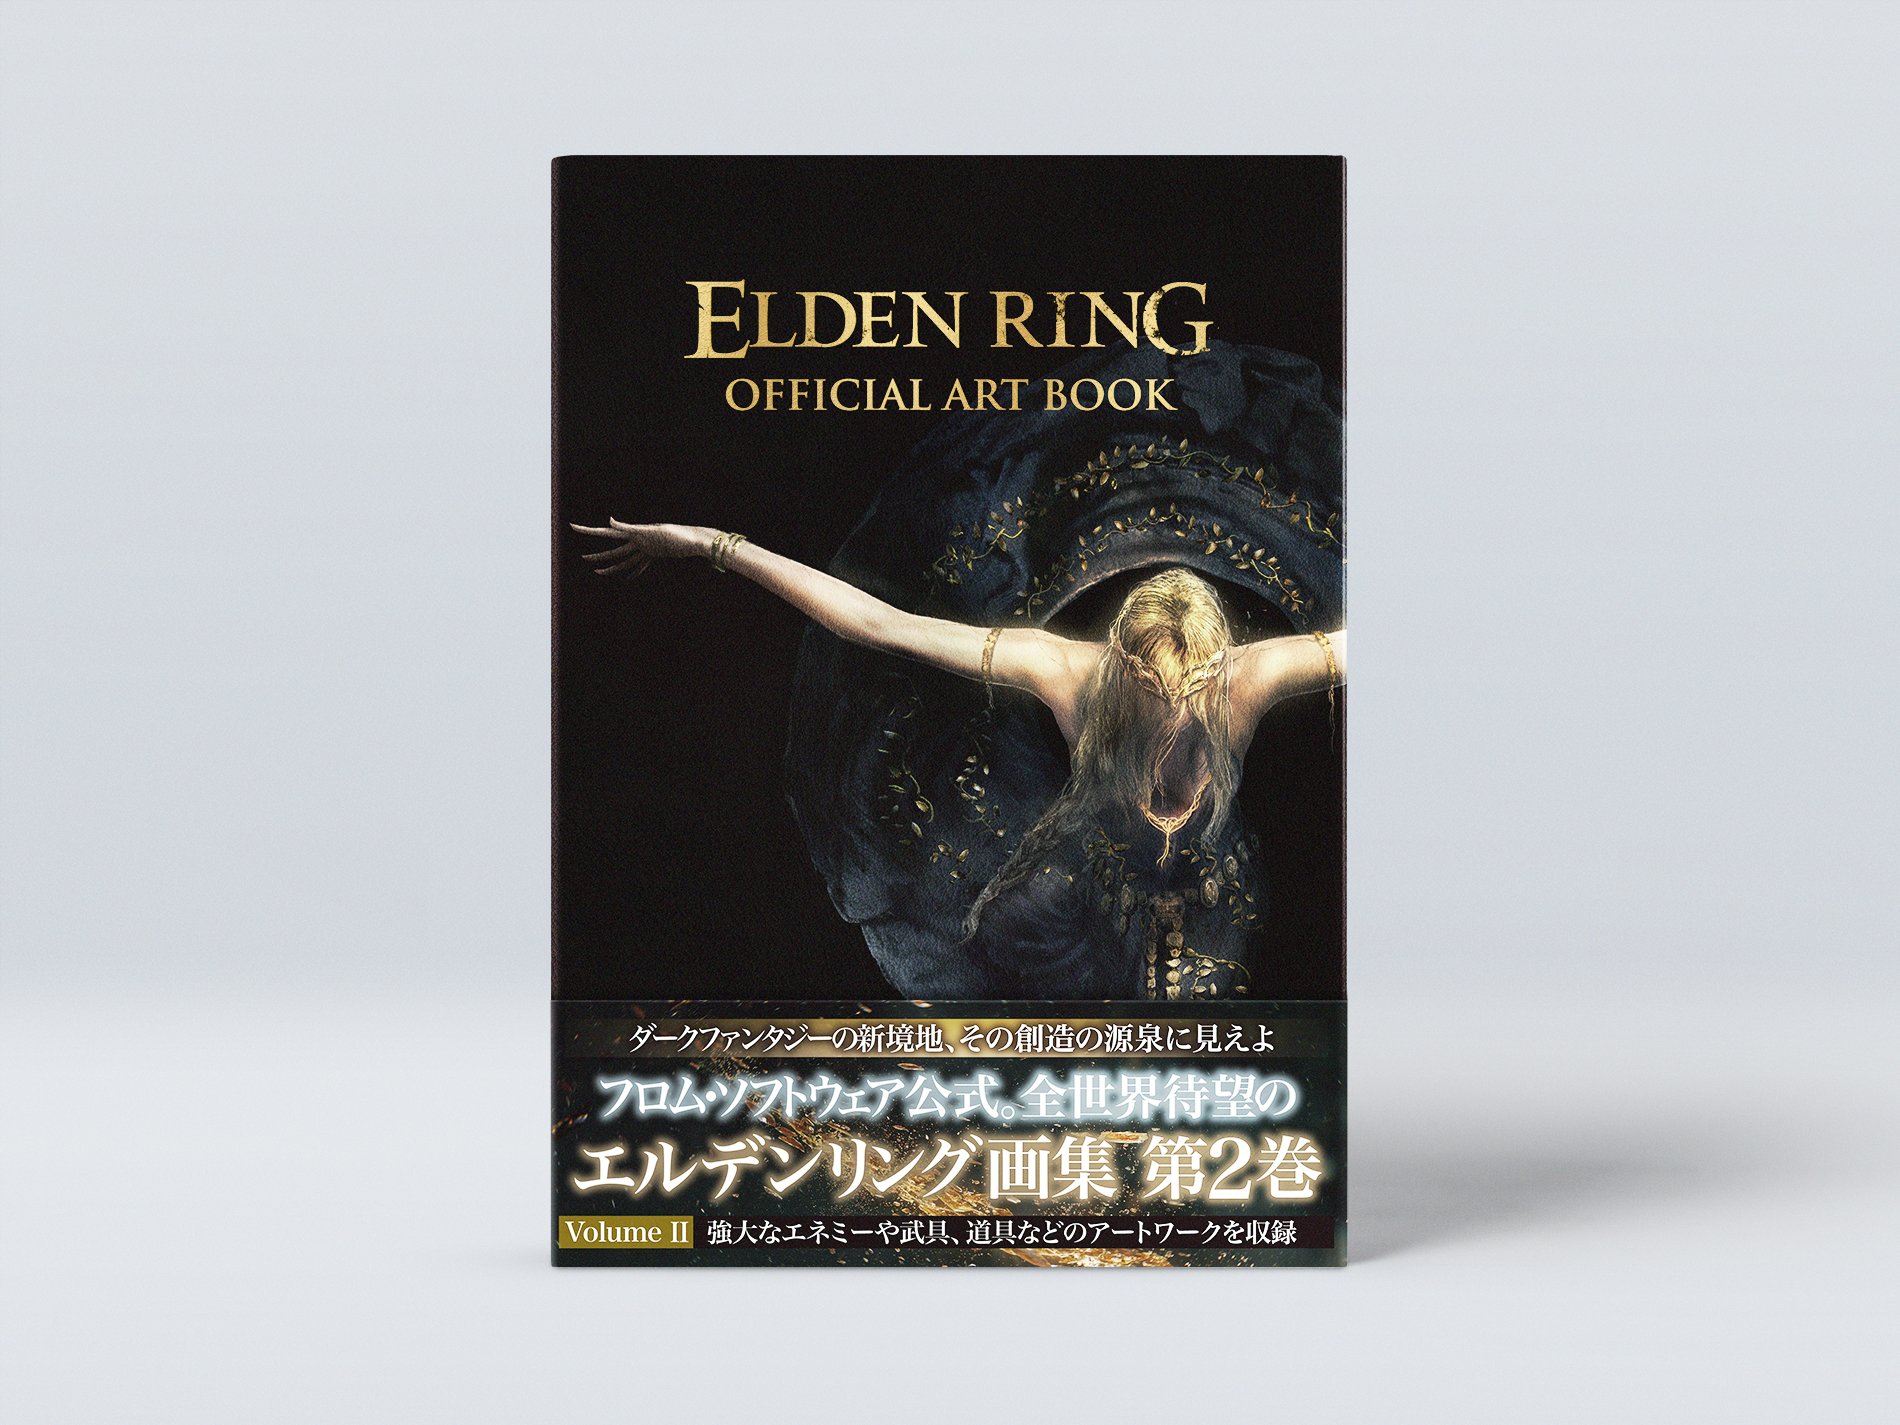 《艾爾登法環》官方藝術設定集11月30日發售